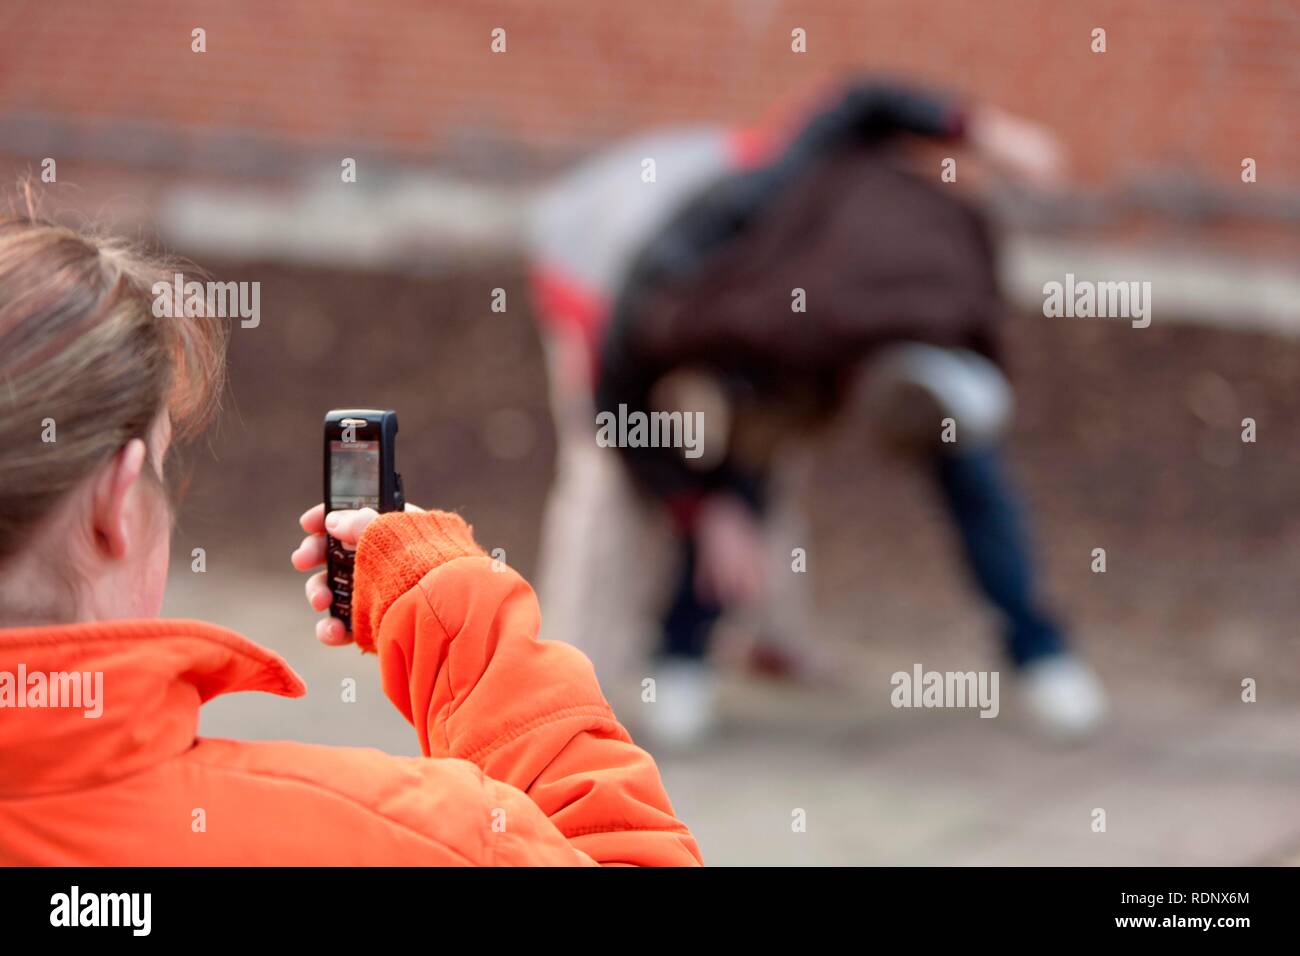 Deux garçons lutte et filmés par une fille avec son téléphone mobile, reenactment Banque D'Images